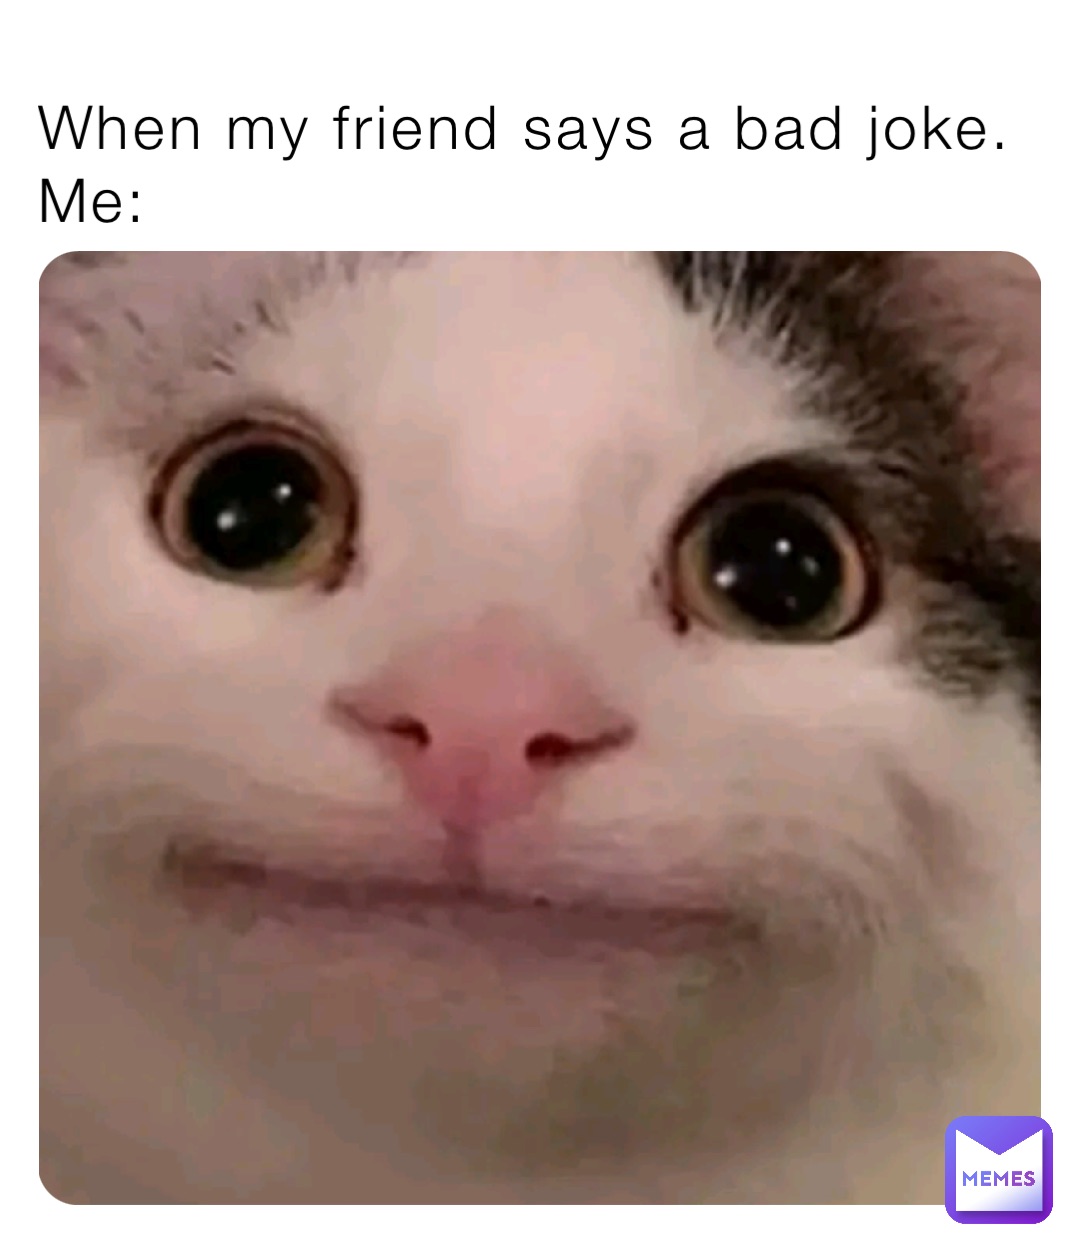 When my friend says a bad joke. 
Me: